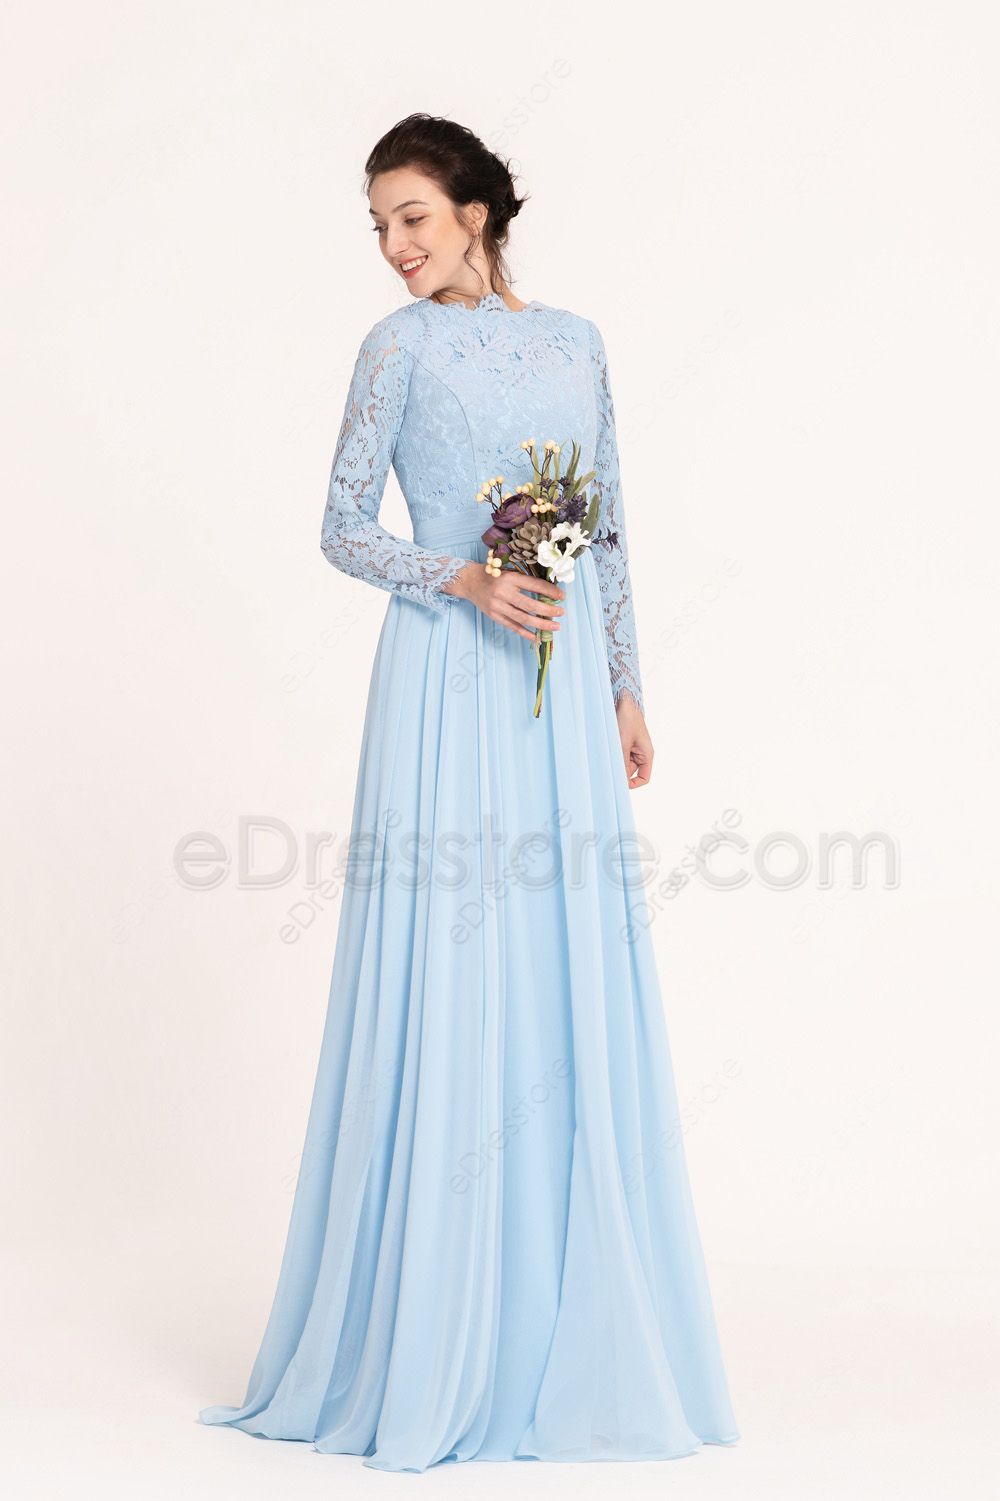 Modest Light Blue Bridesmaid Dresses Long Sleeves | eDresstore